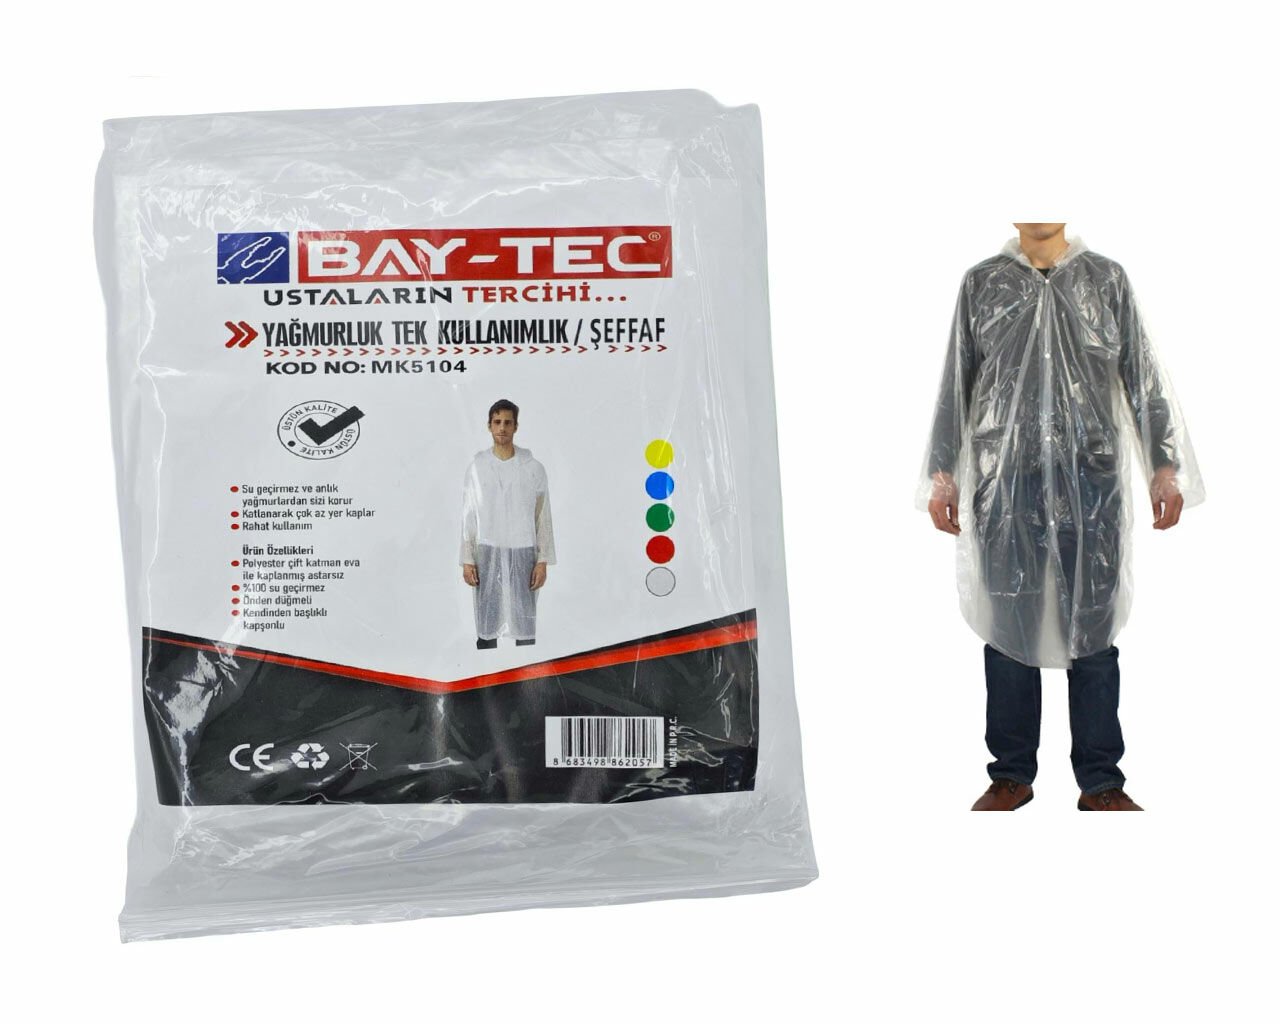 BAY-TEC MK5104 Yağmurluk Tek Kullanımlık Şeffaf